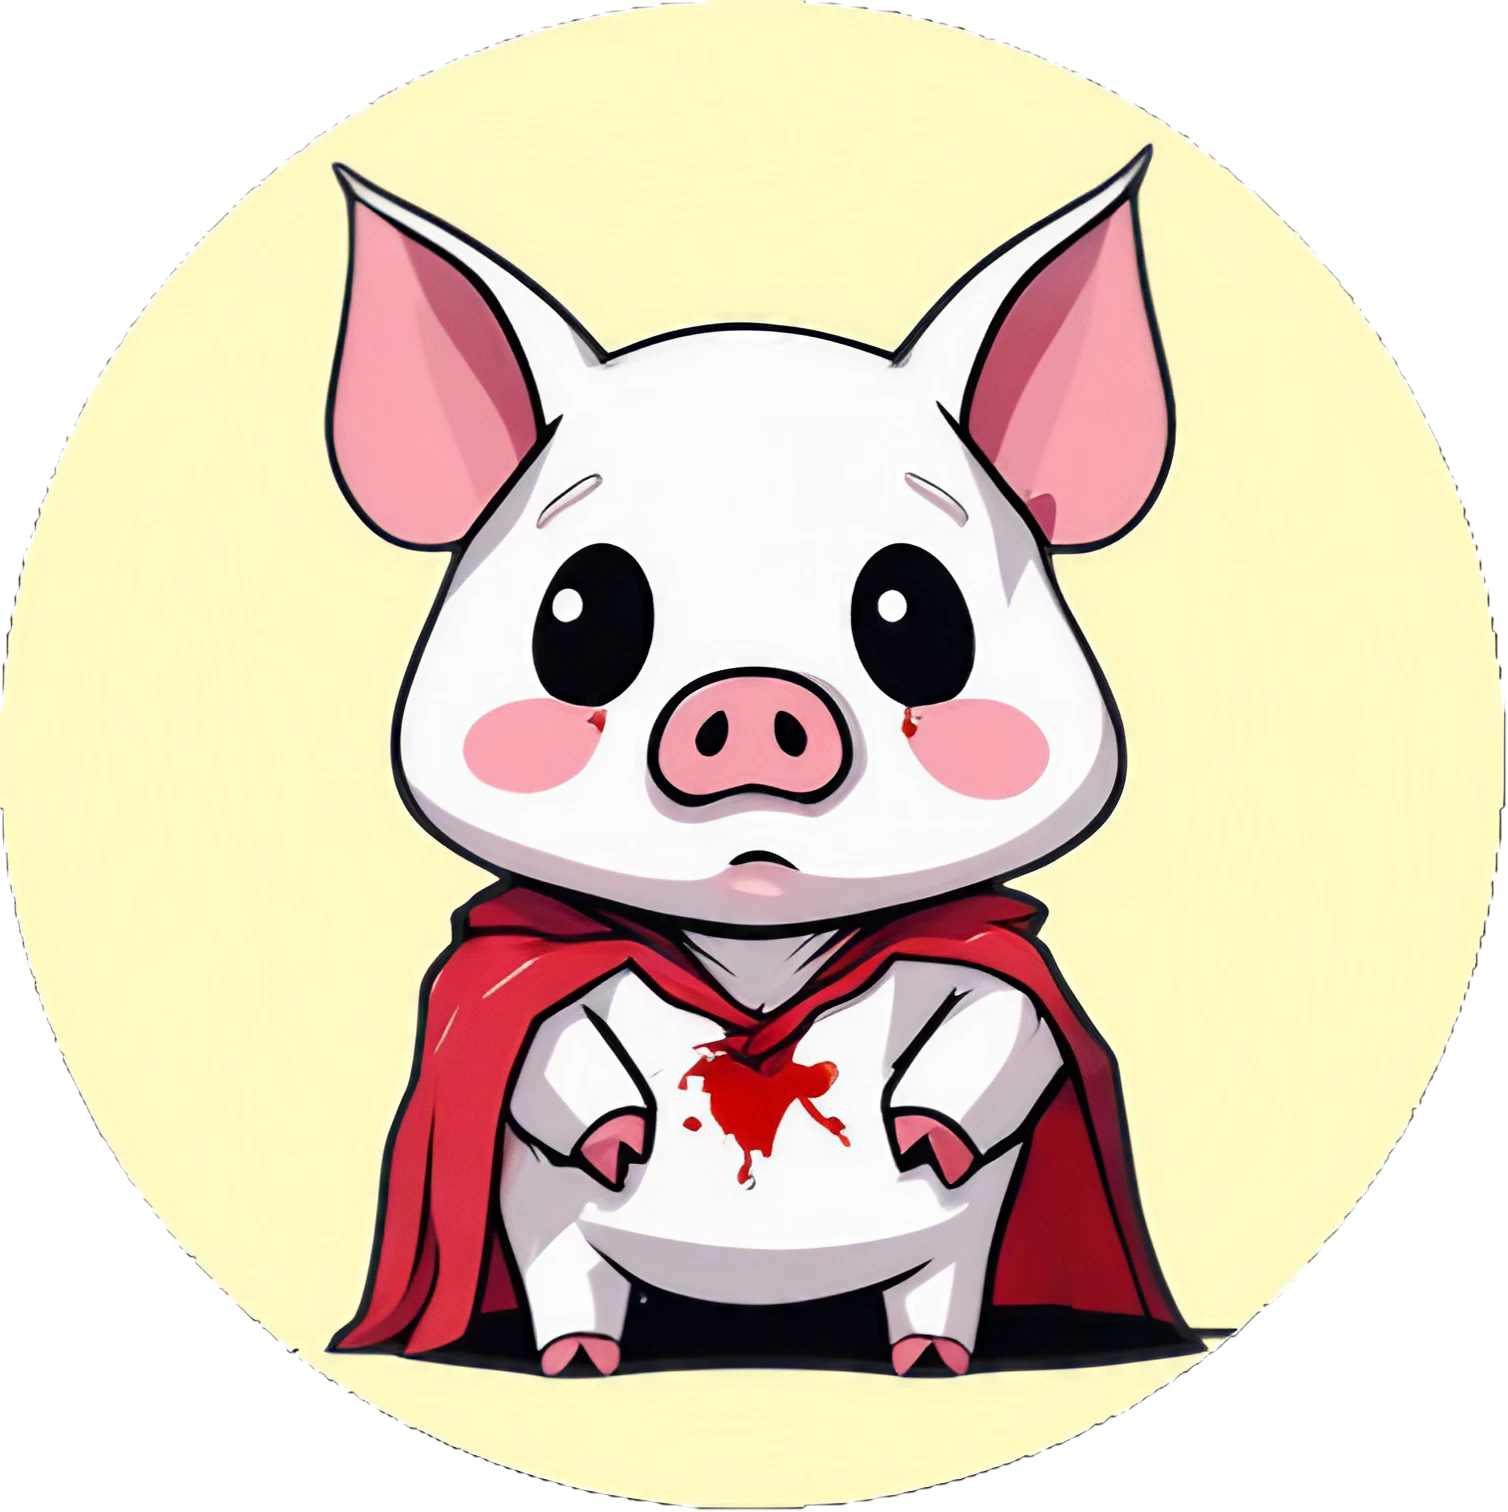 Blutiges Kawaii Vampir Schwein - Sticker - 3x3cm